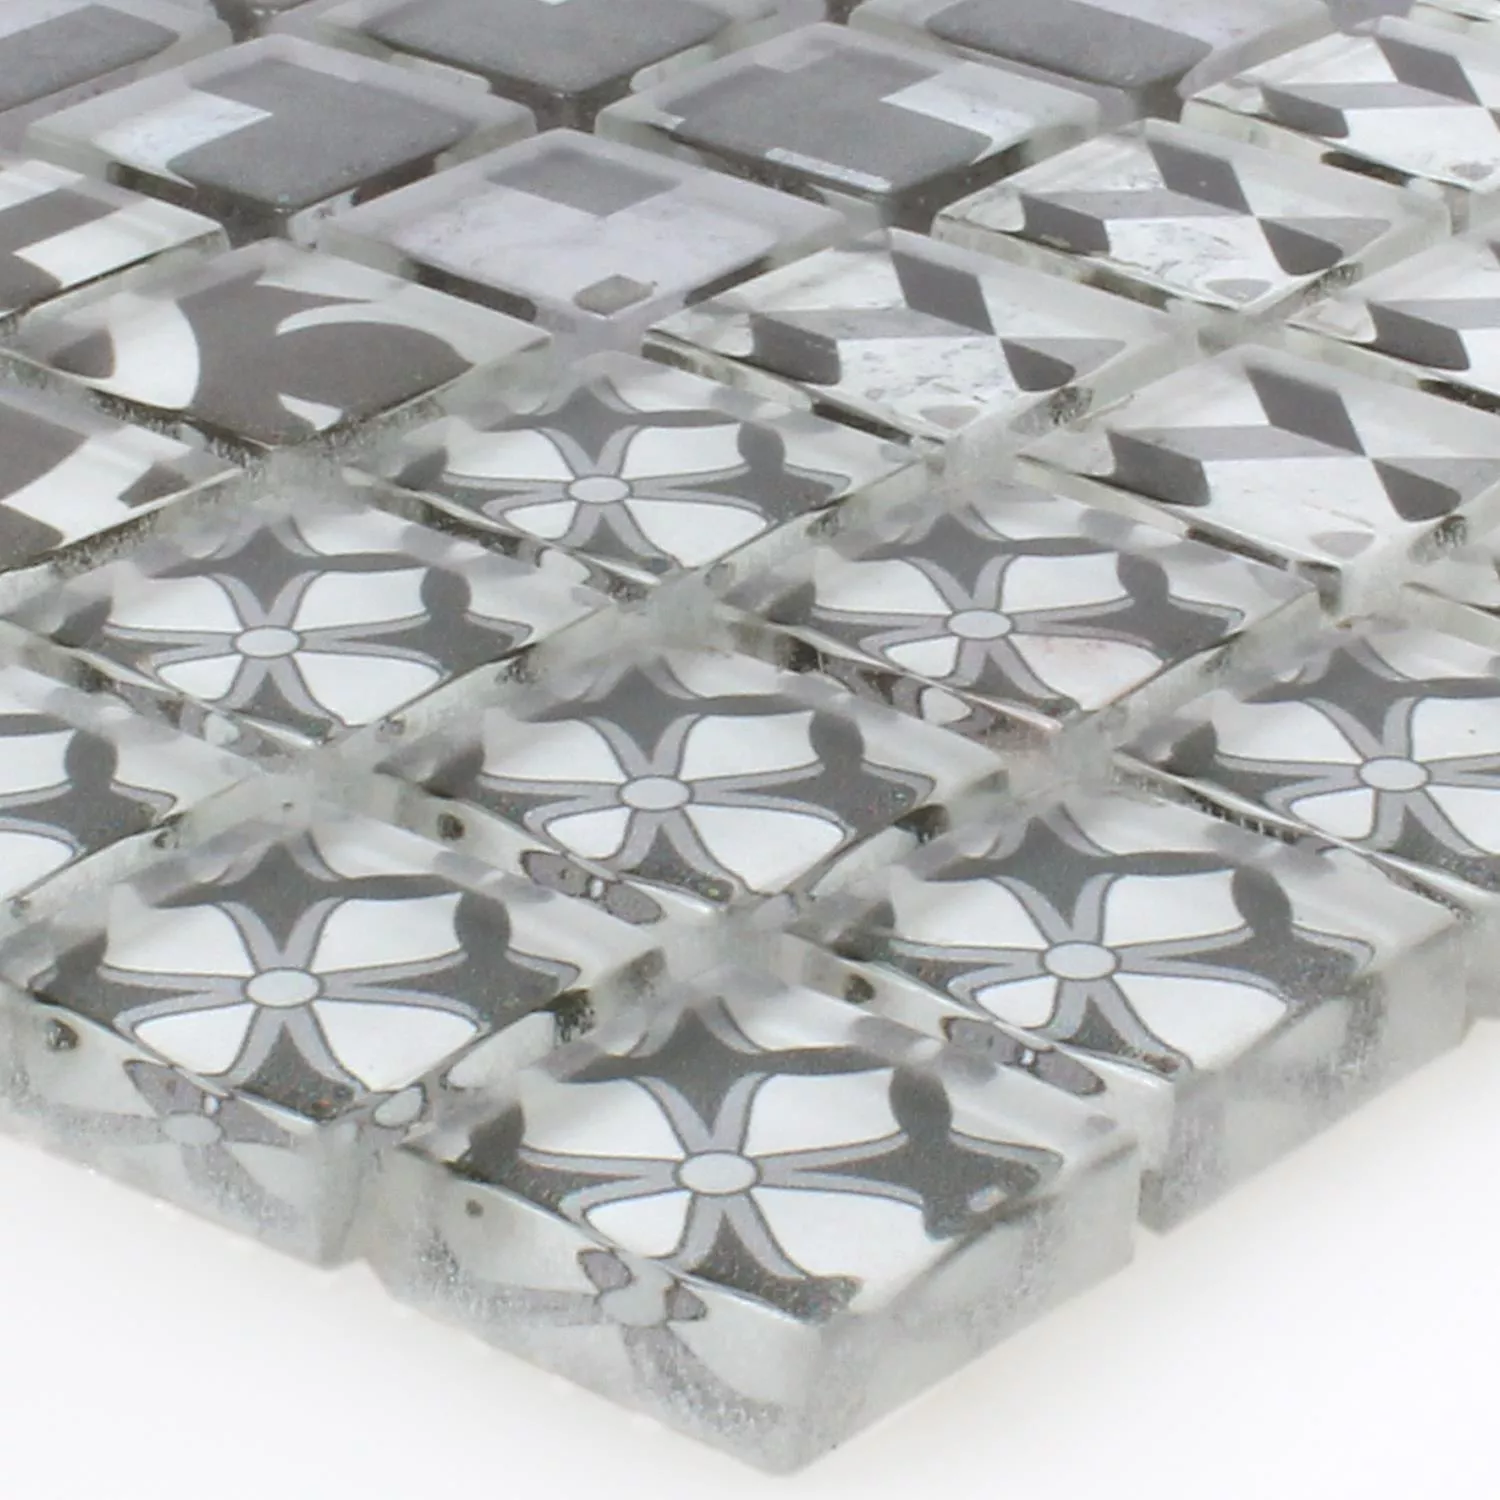 Muster von Mosaikfliesen Glas Inspiration Schwarz